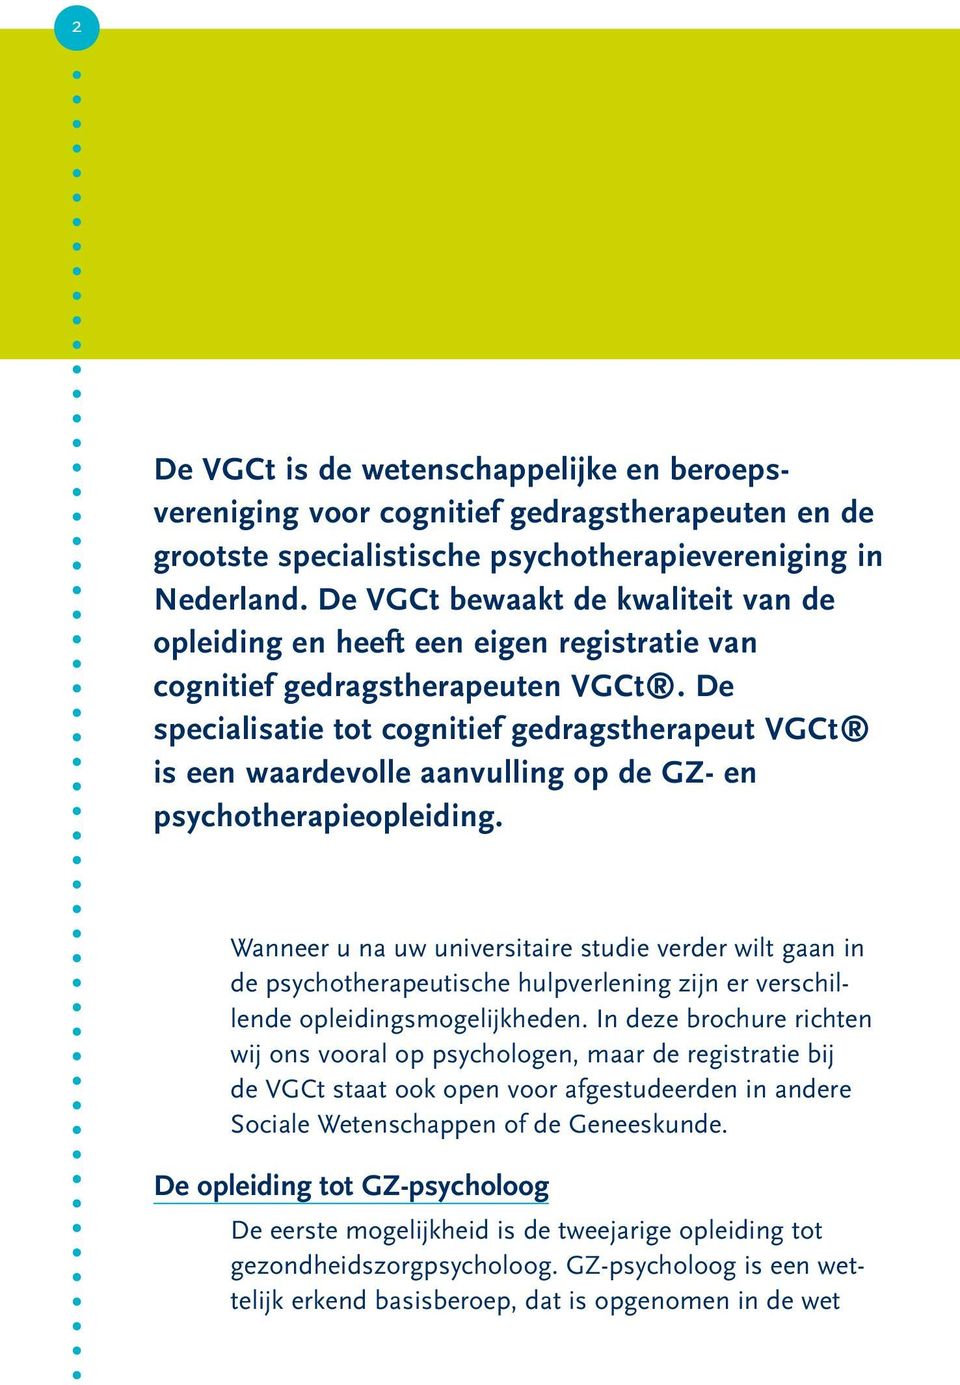 De specialisatie tot cognitief gedragstherapeut VGCt is een waardevolle aanvulling op de GZ- en psychotherapieopleiding.